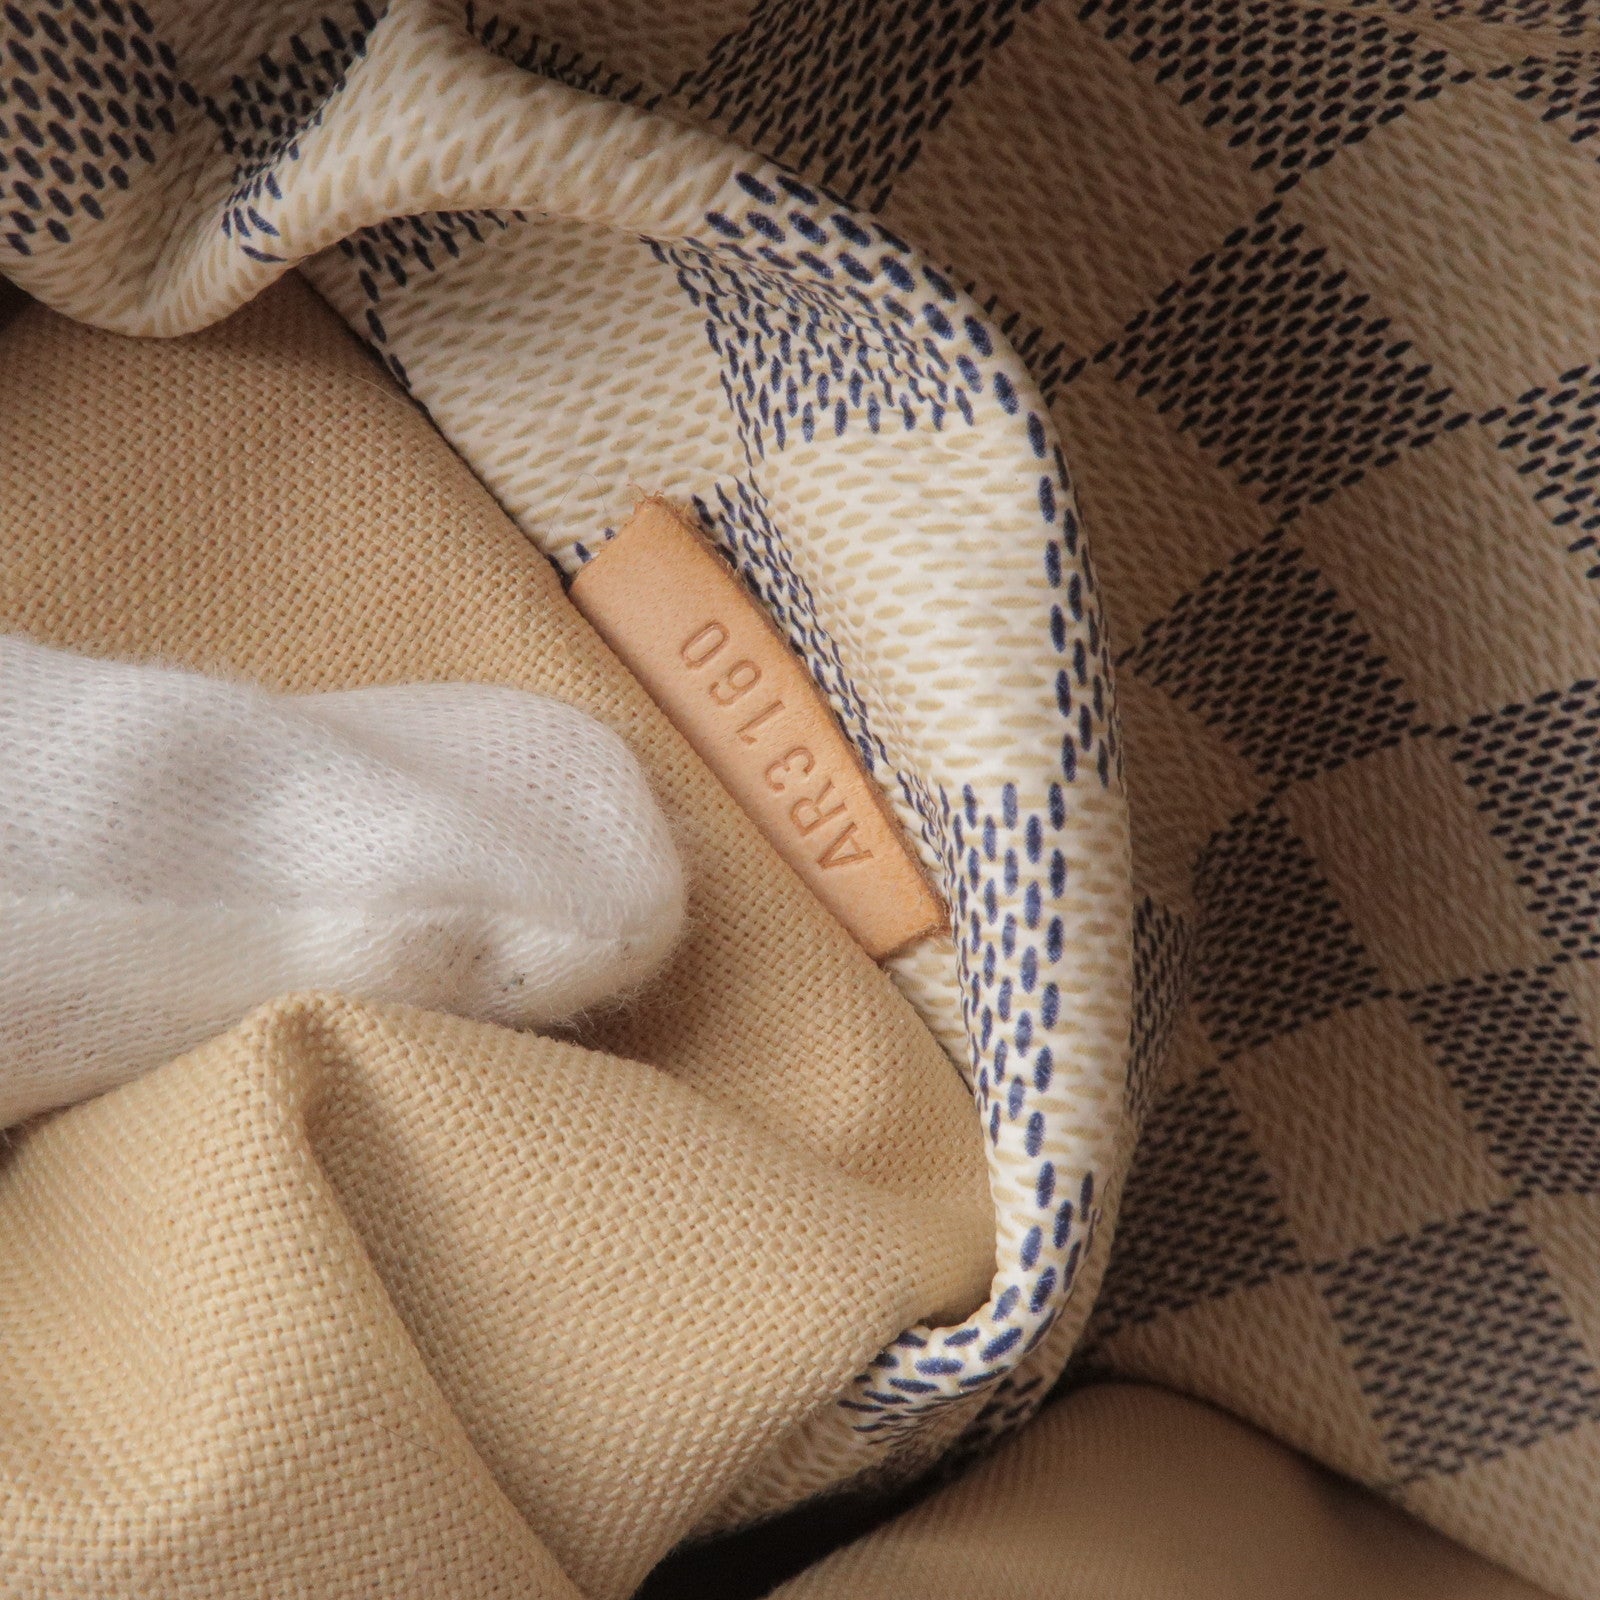 Authentic Louis Vuitton Totally GM Damier Azur Tote bag shoulder bag